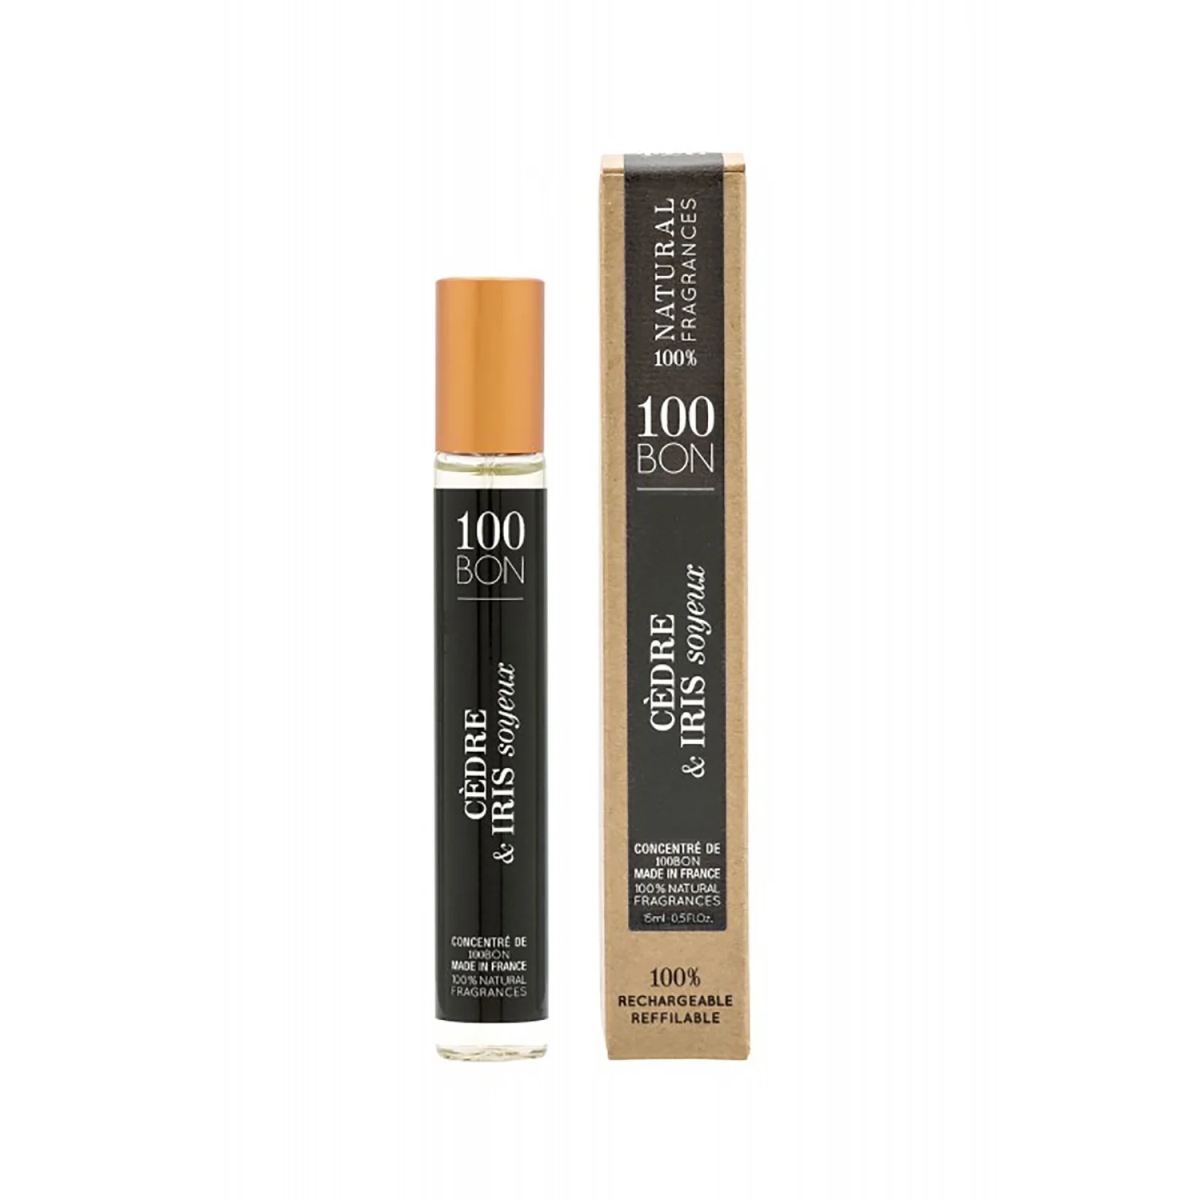 Picture of 100 BON 10062059 0.50 oz Concentrate Eau De Parfum Spray Cedre & Iris Soyeux for Unisex